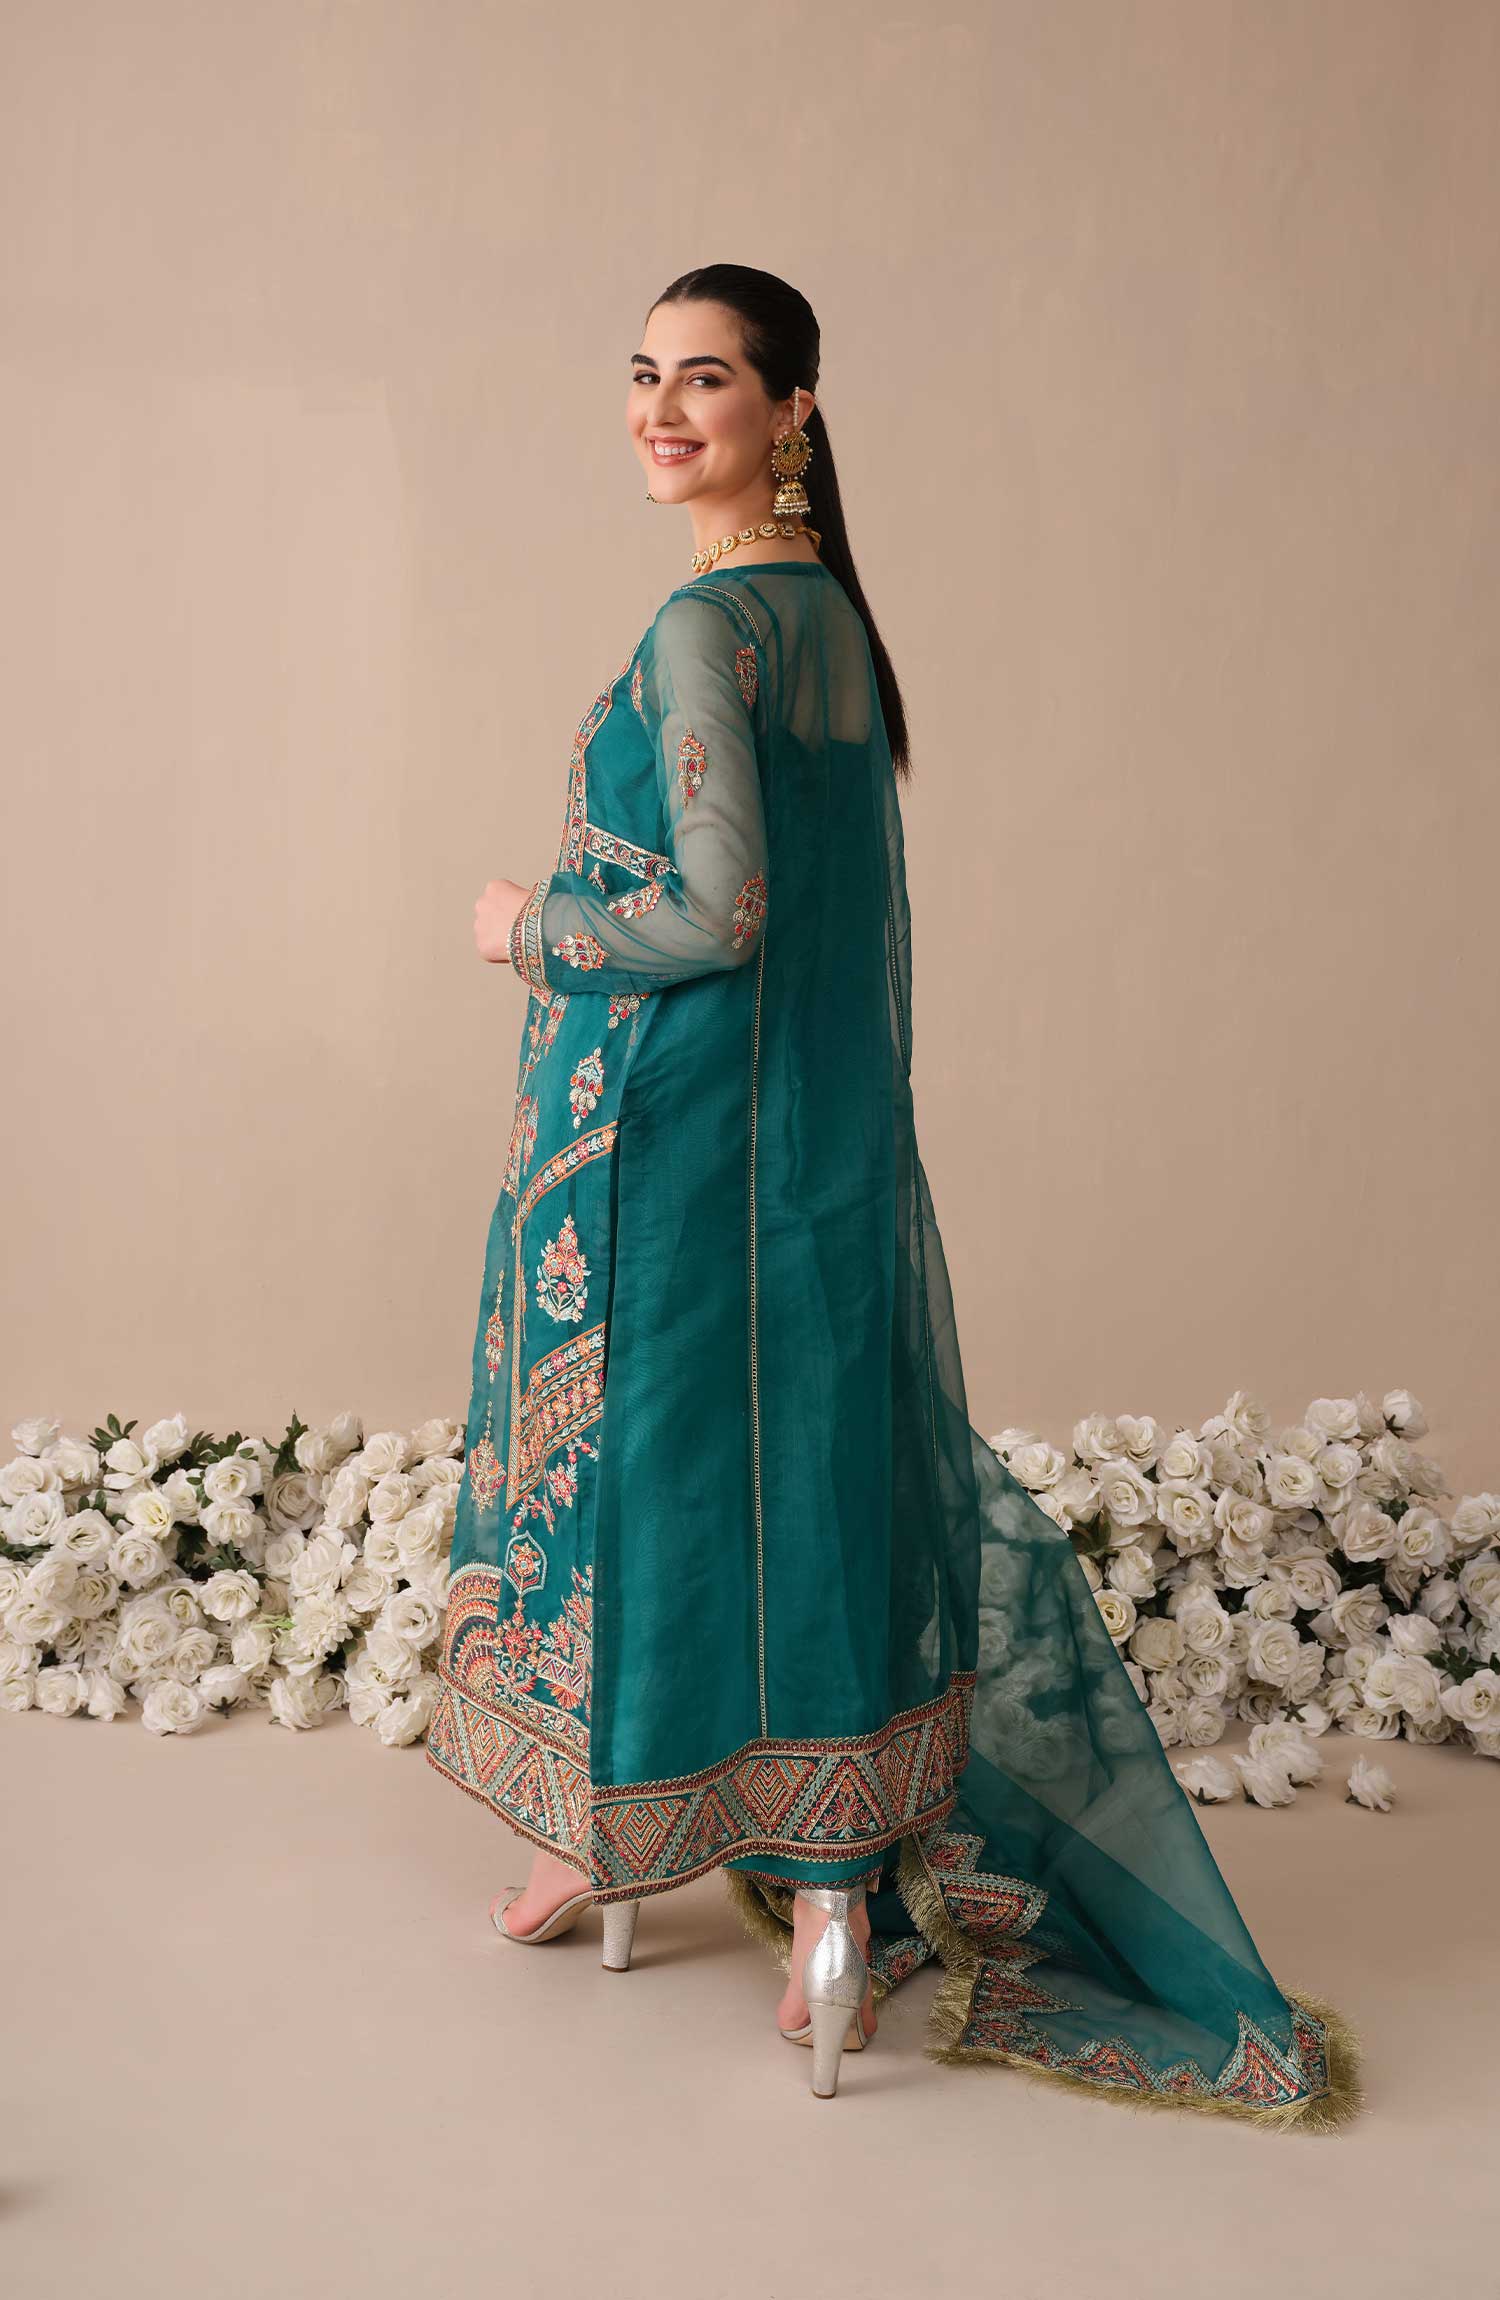 Emaan Adeel designer Eshaal Luxury Pakistani Organza Dress - db21445